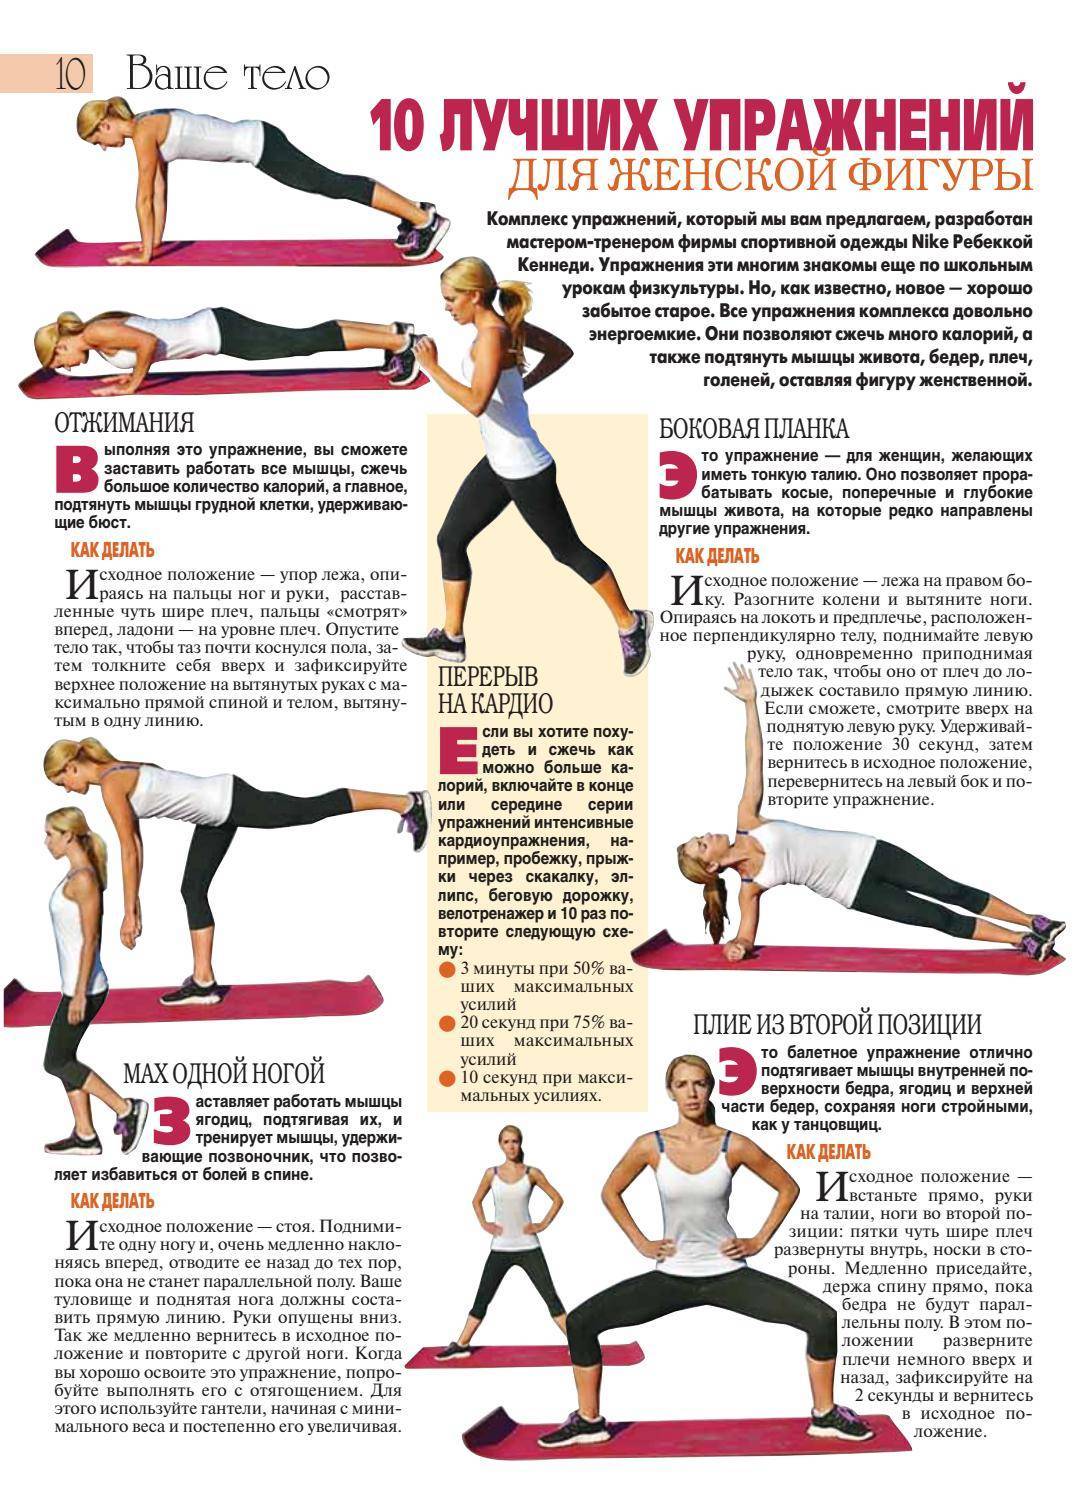 13 эффективных упражнений для сжигания жира на спине